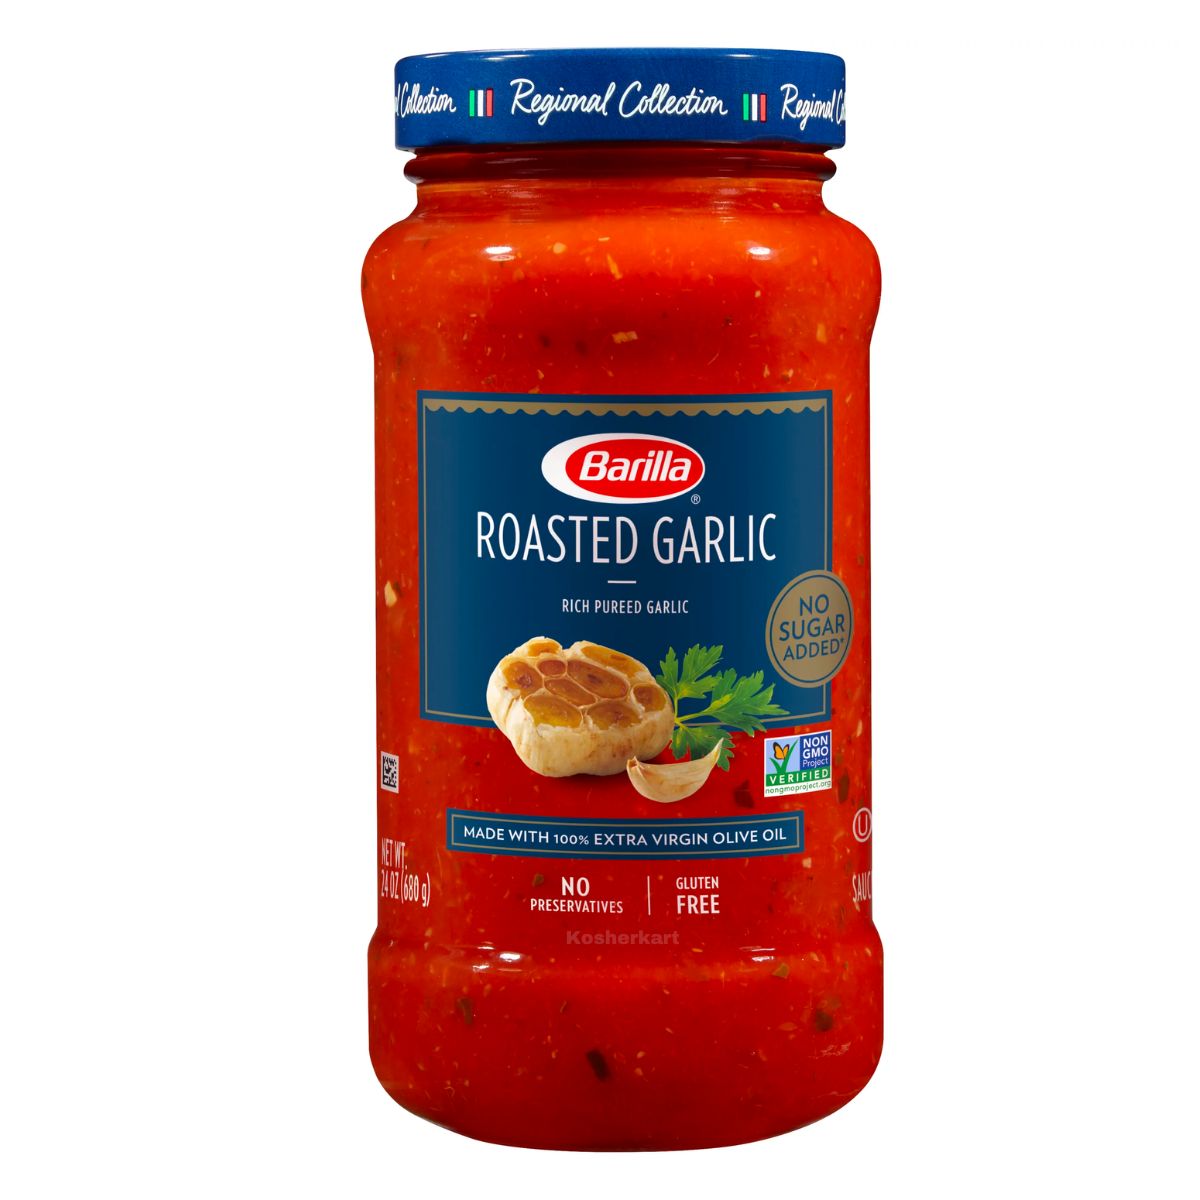 Barilla Roasted Garlic Sauce 24 oz